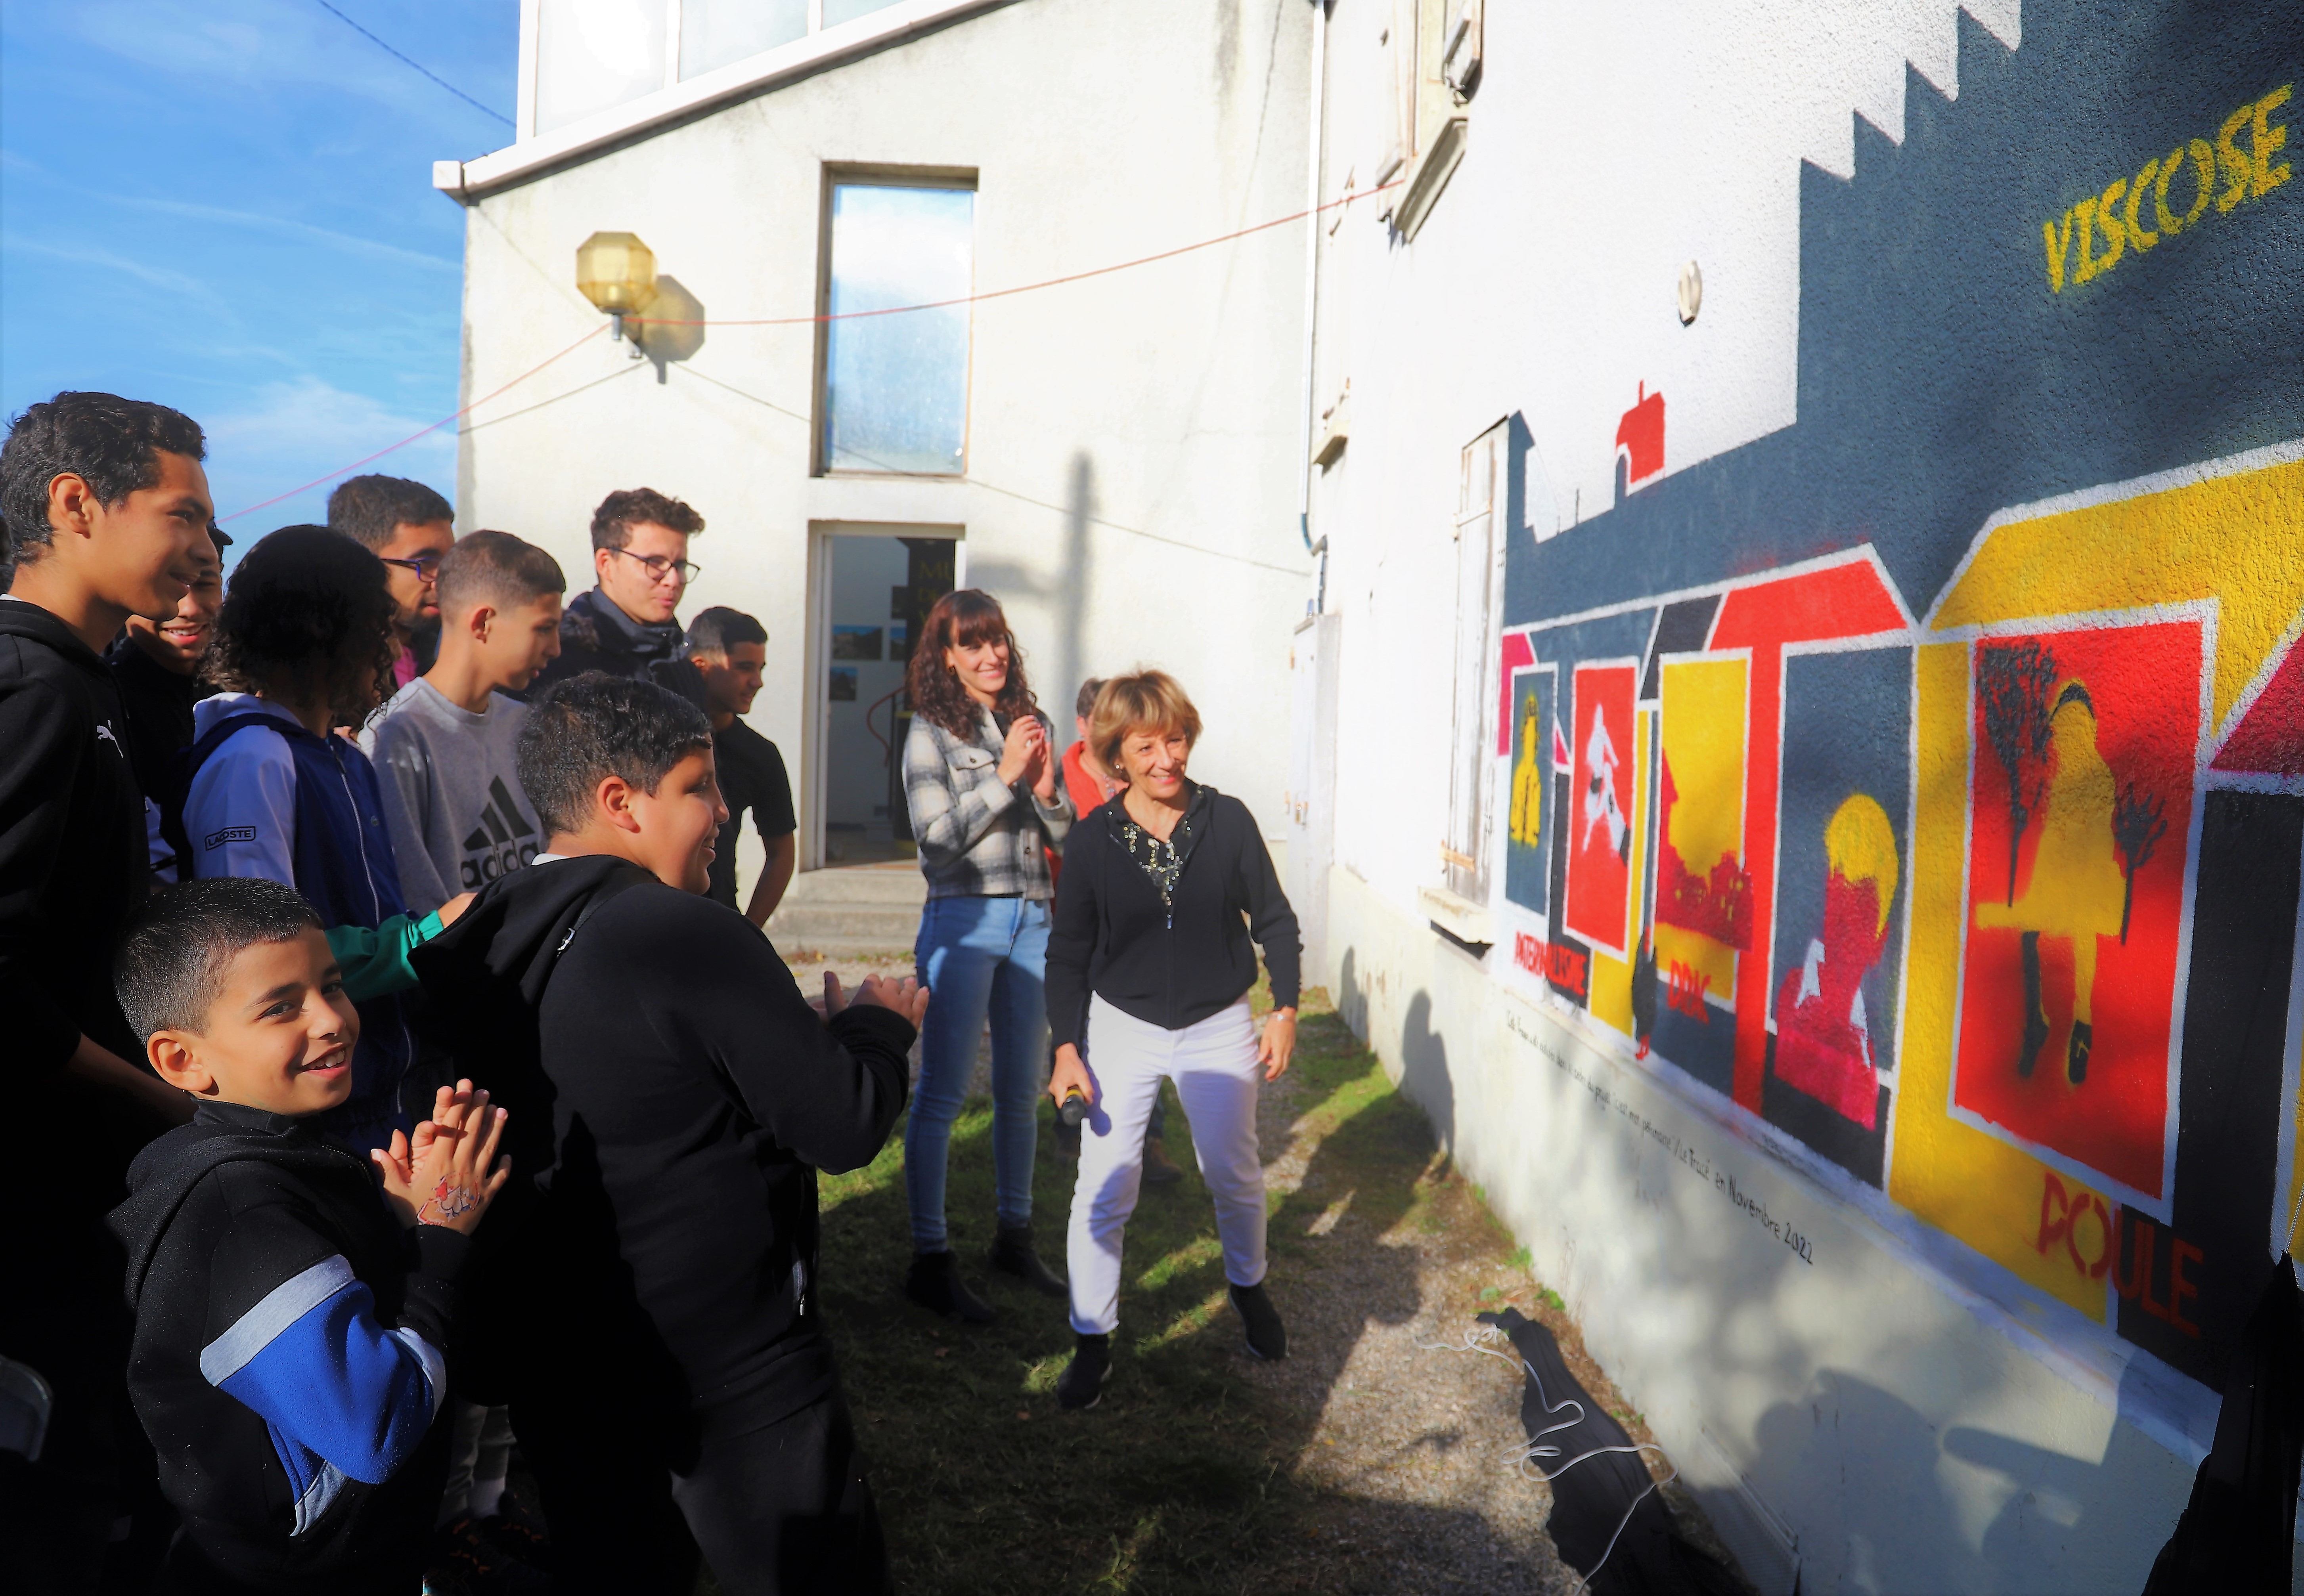 La fierté se lisait dans les yeux des jeunes et des acteurs du projet, ainsi que dans ceux des familles, au moment de découvrir la fresque multicolore qui orne désormais le mur jouxtant l'entrée du musée de la Viscose.